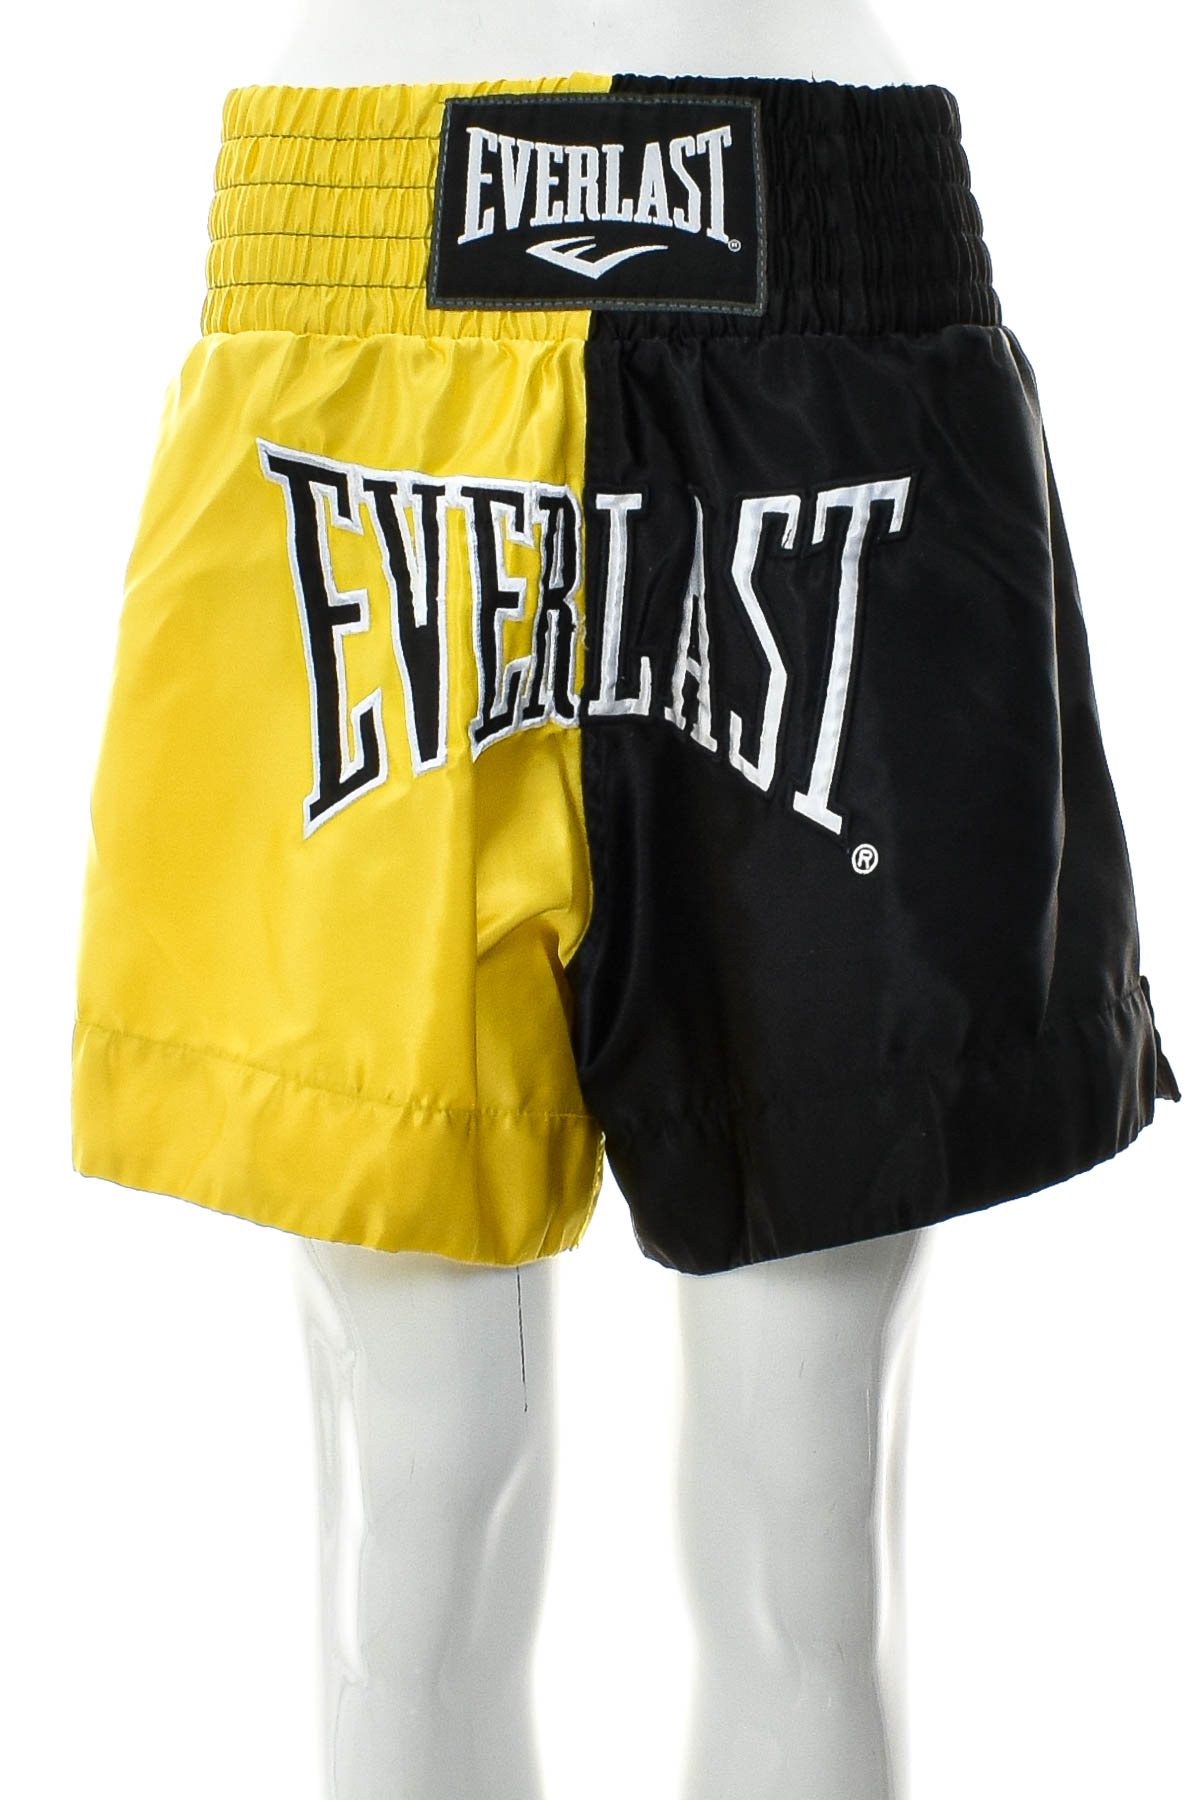 Women's shorts for boxing - EVERLAST - 0